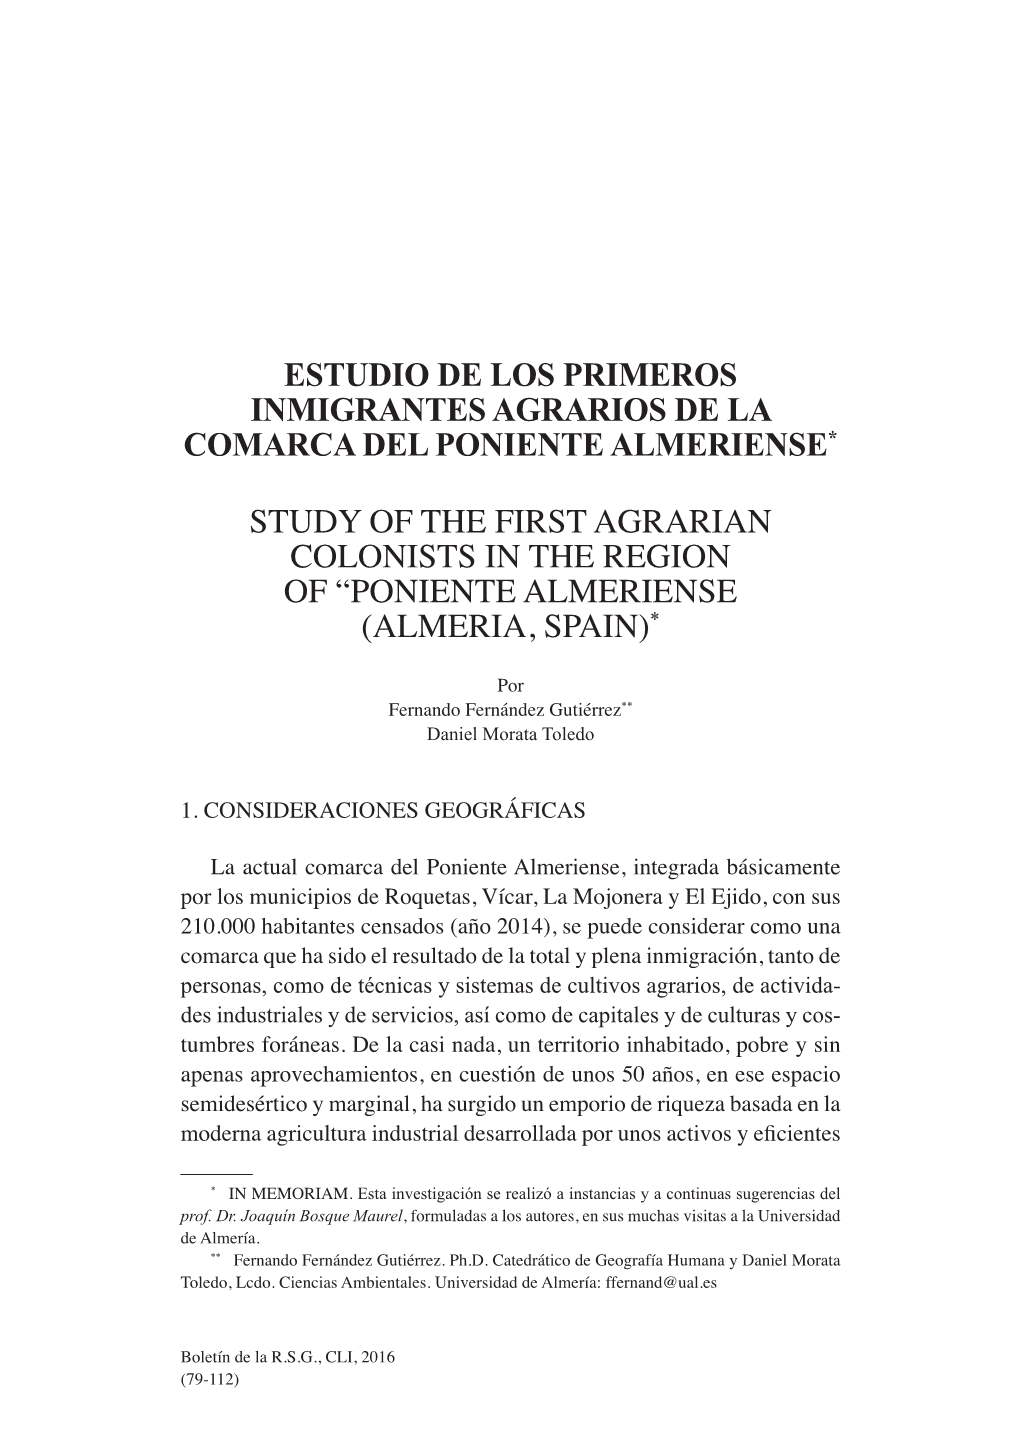 Estudio De Los Primeros Inmigrantes Agrarios De La Comarca Del Poniente Almeriense* Study of the First Agrarian Colonists In